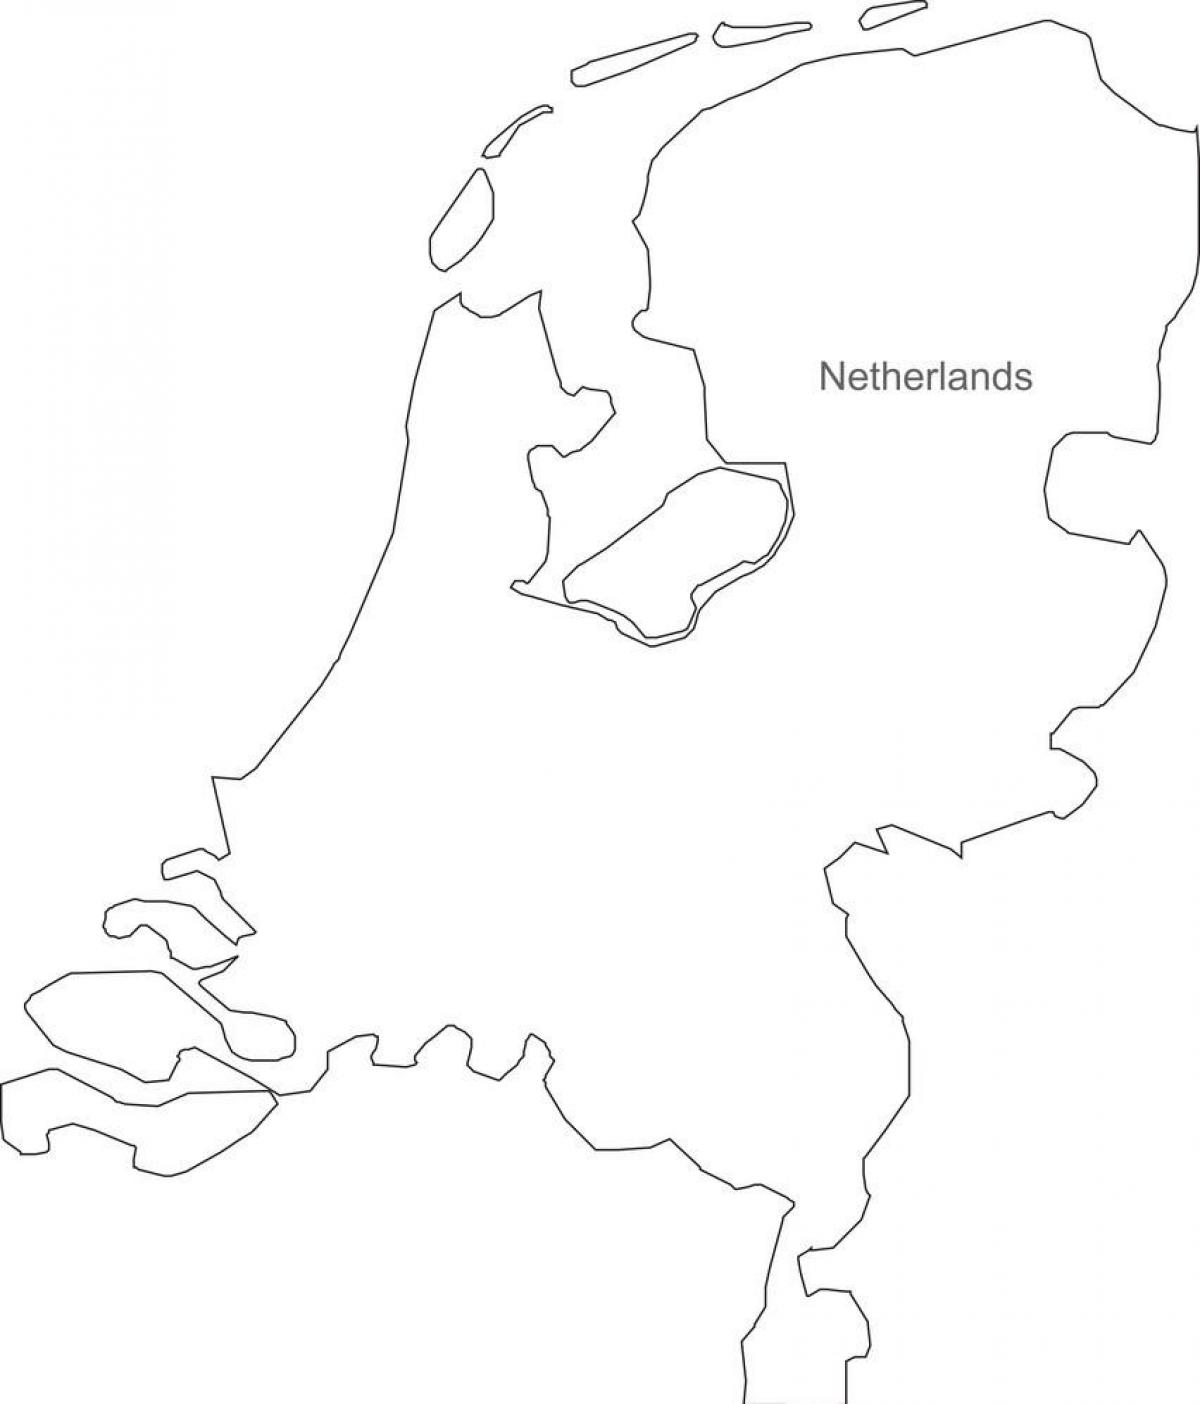 De kaart met de contouren van Nederland